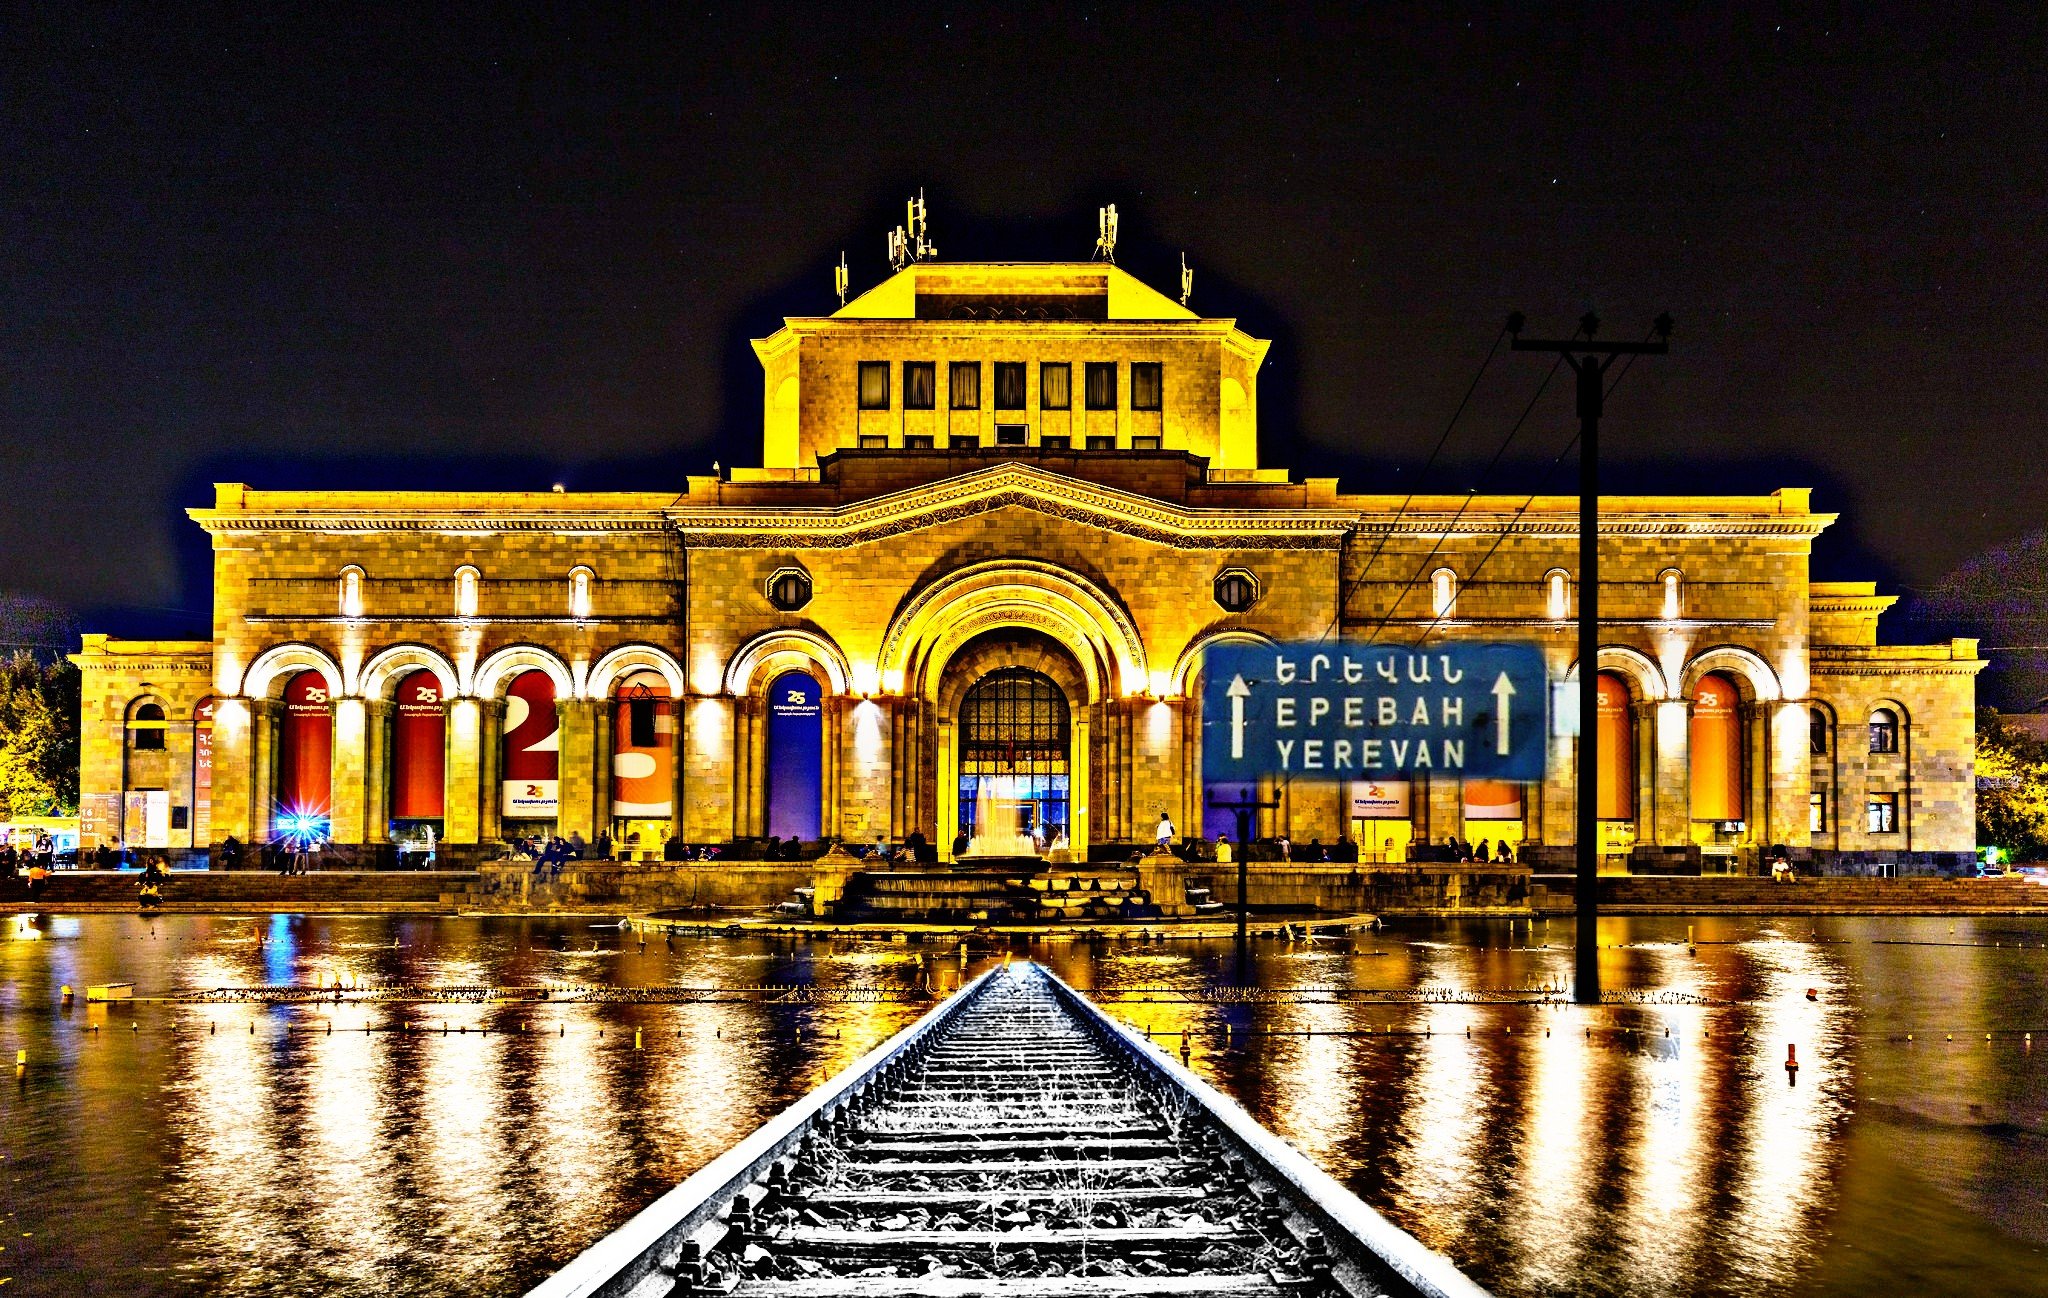 Ереван слова. Ночной вокзал Еревана. Армения Ереван площадь Республики. Железнодорожный вокзал Ереван. Армения Ереван ЖД вокзал.